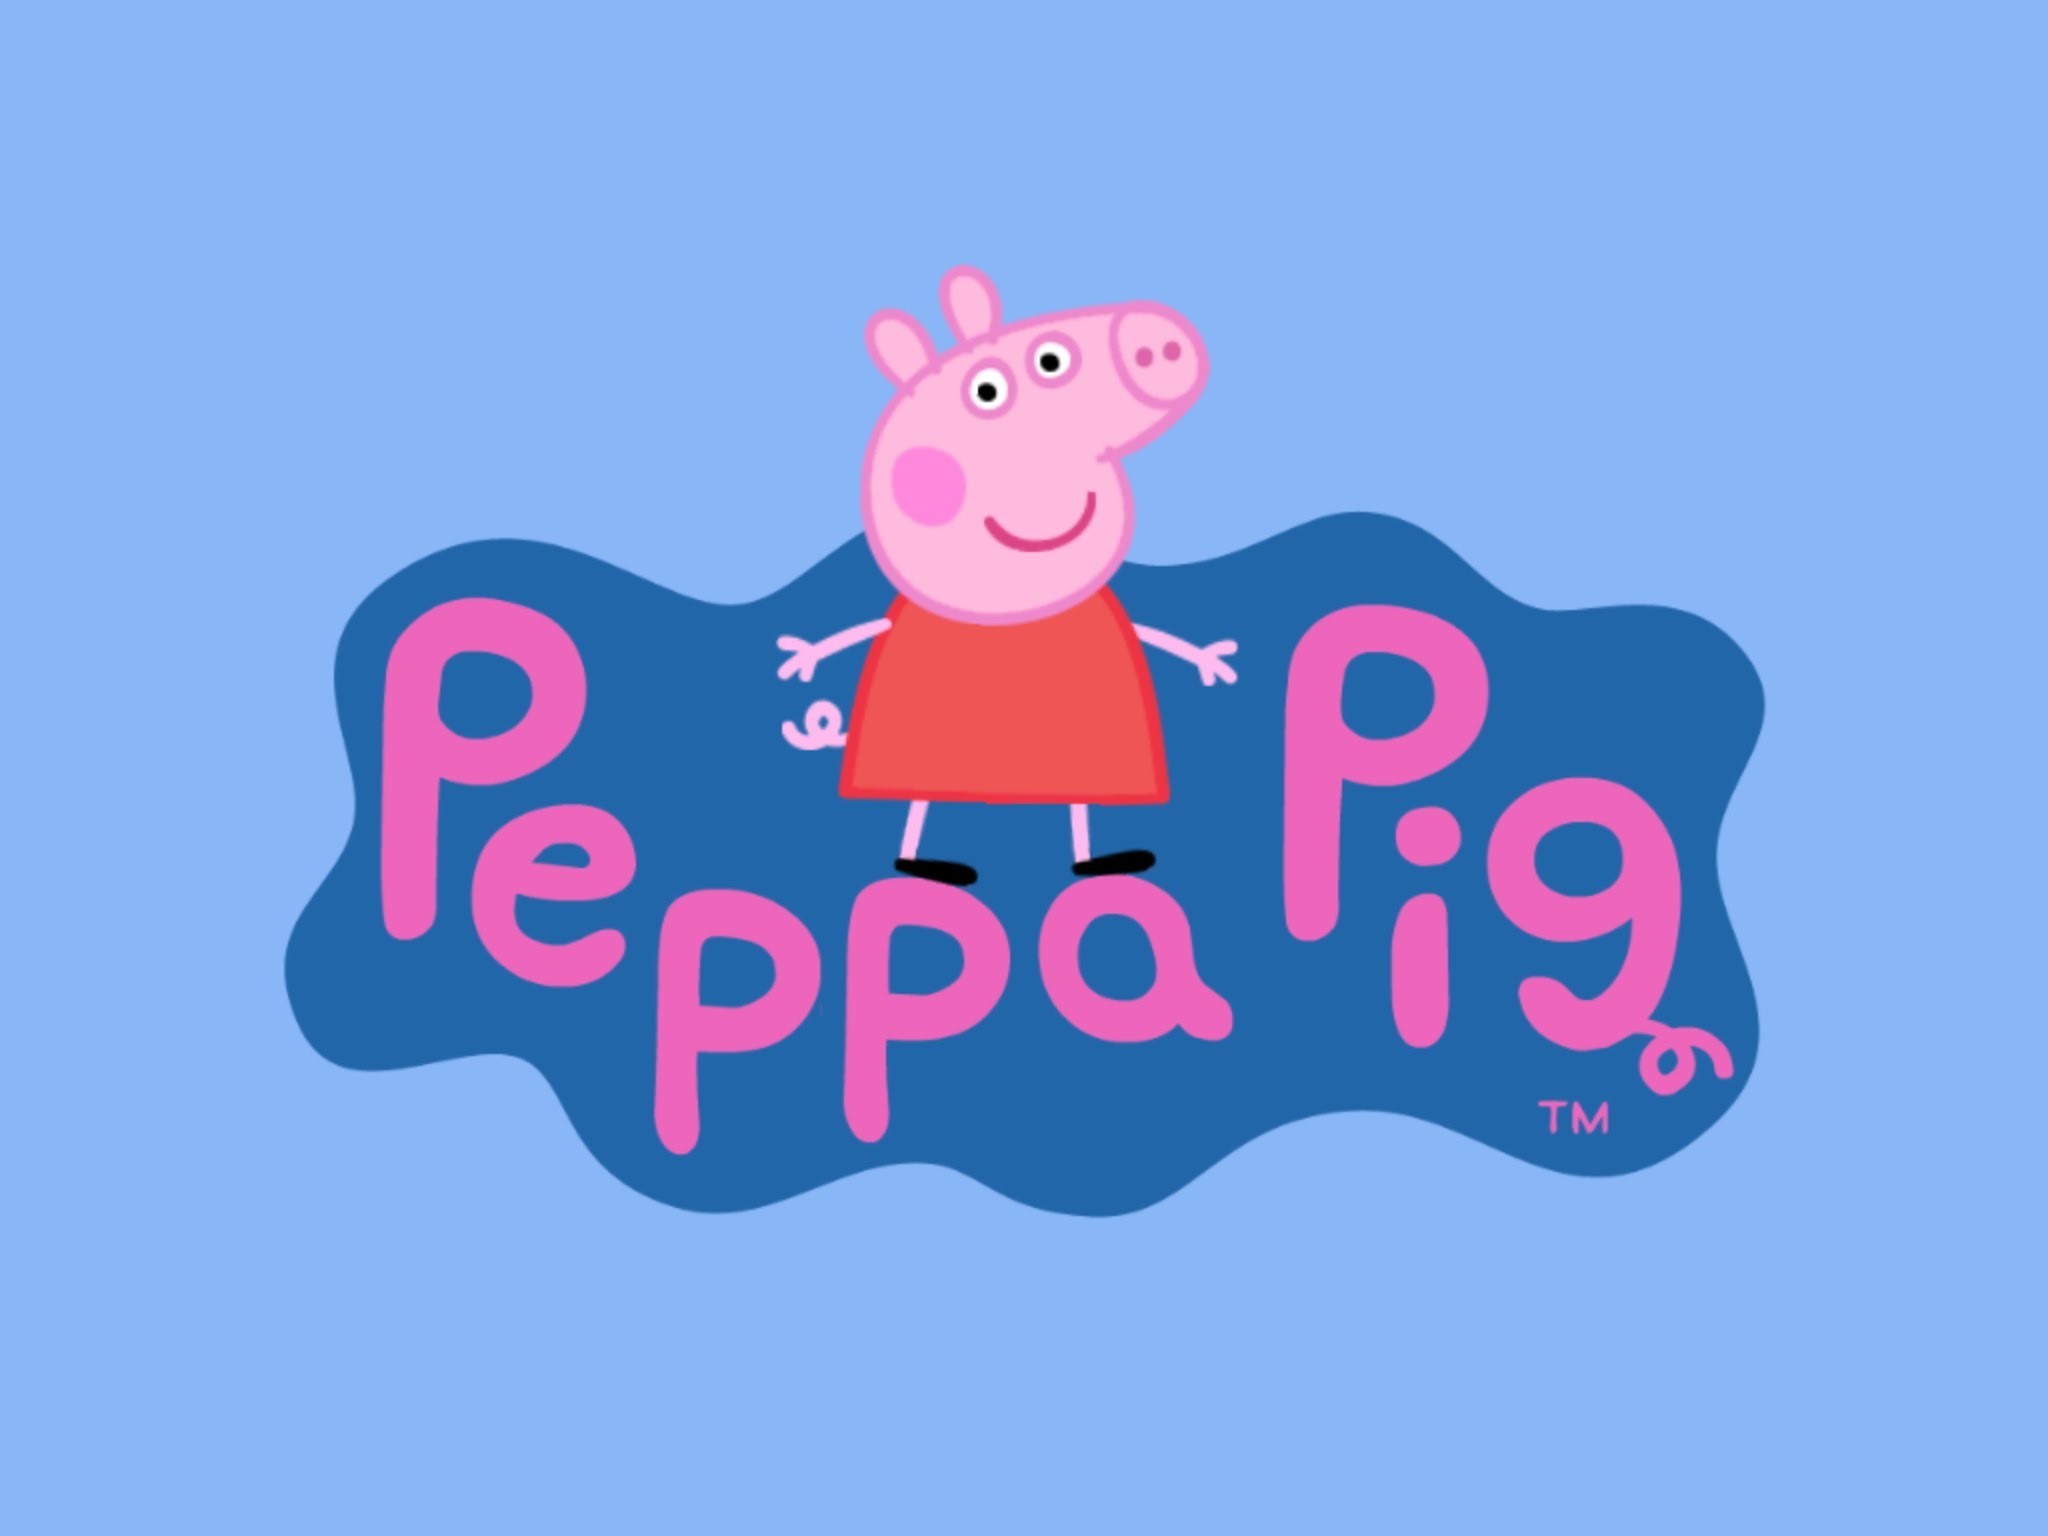 peppa pig wallpaper hd,rosa,testo,cartone animato,font,illustrazione